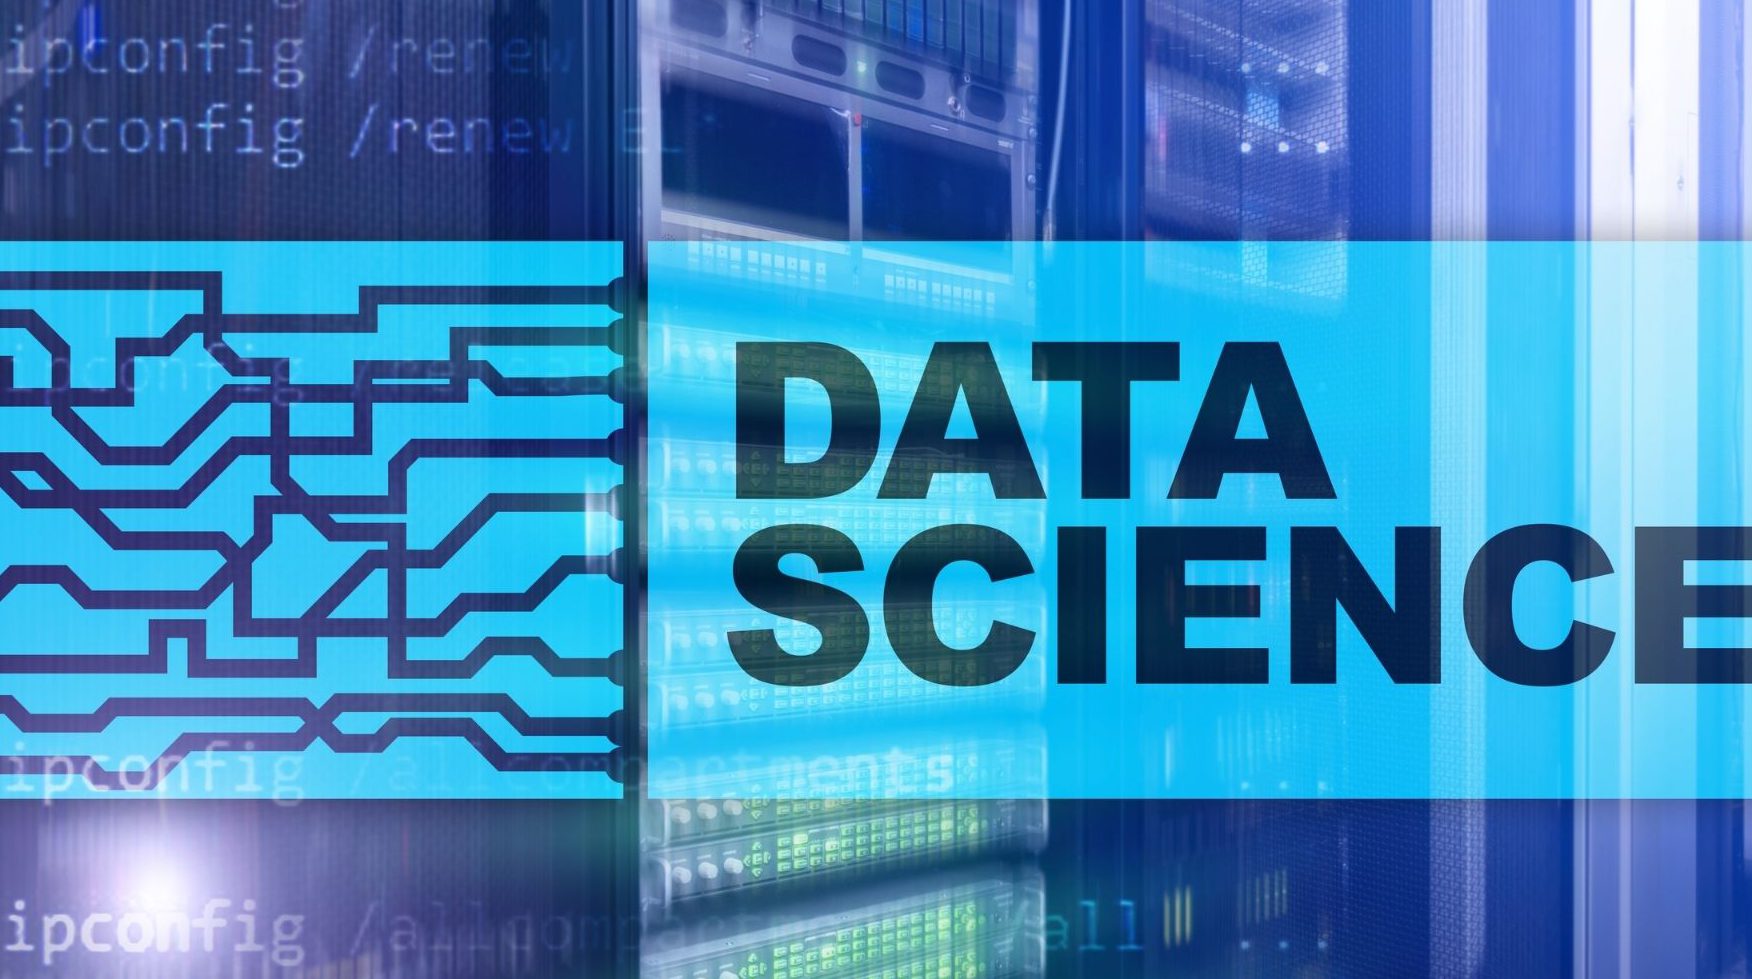 Global Data Science Platform Market